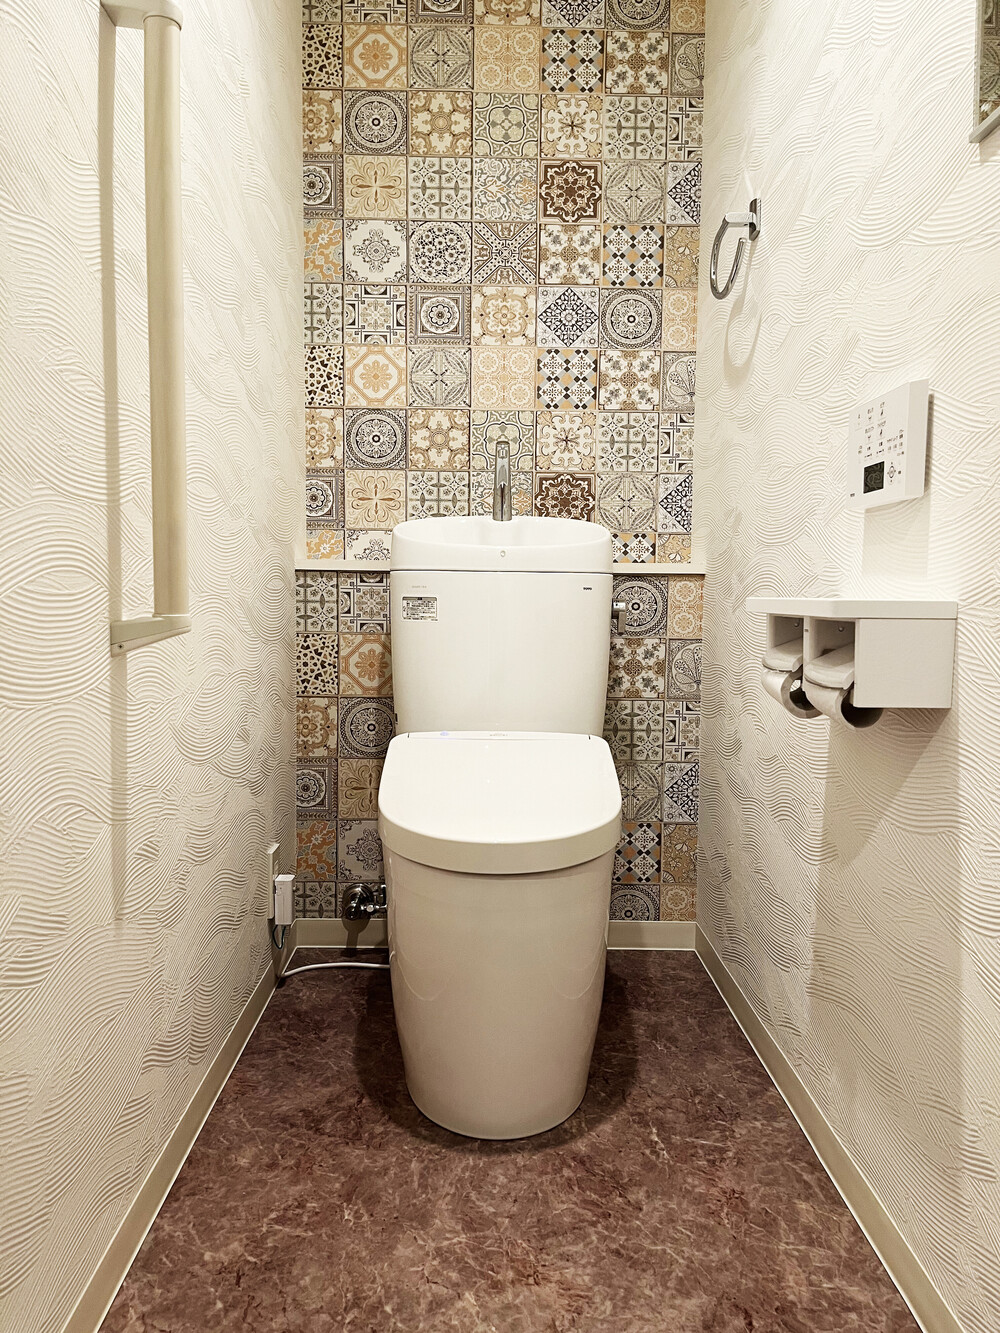 壁紙のコーディネートで、トイレがくつろぎの空間に生まれ変わりました。